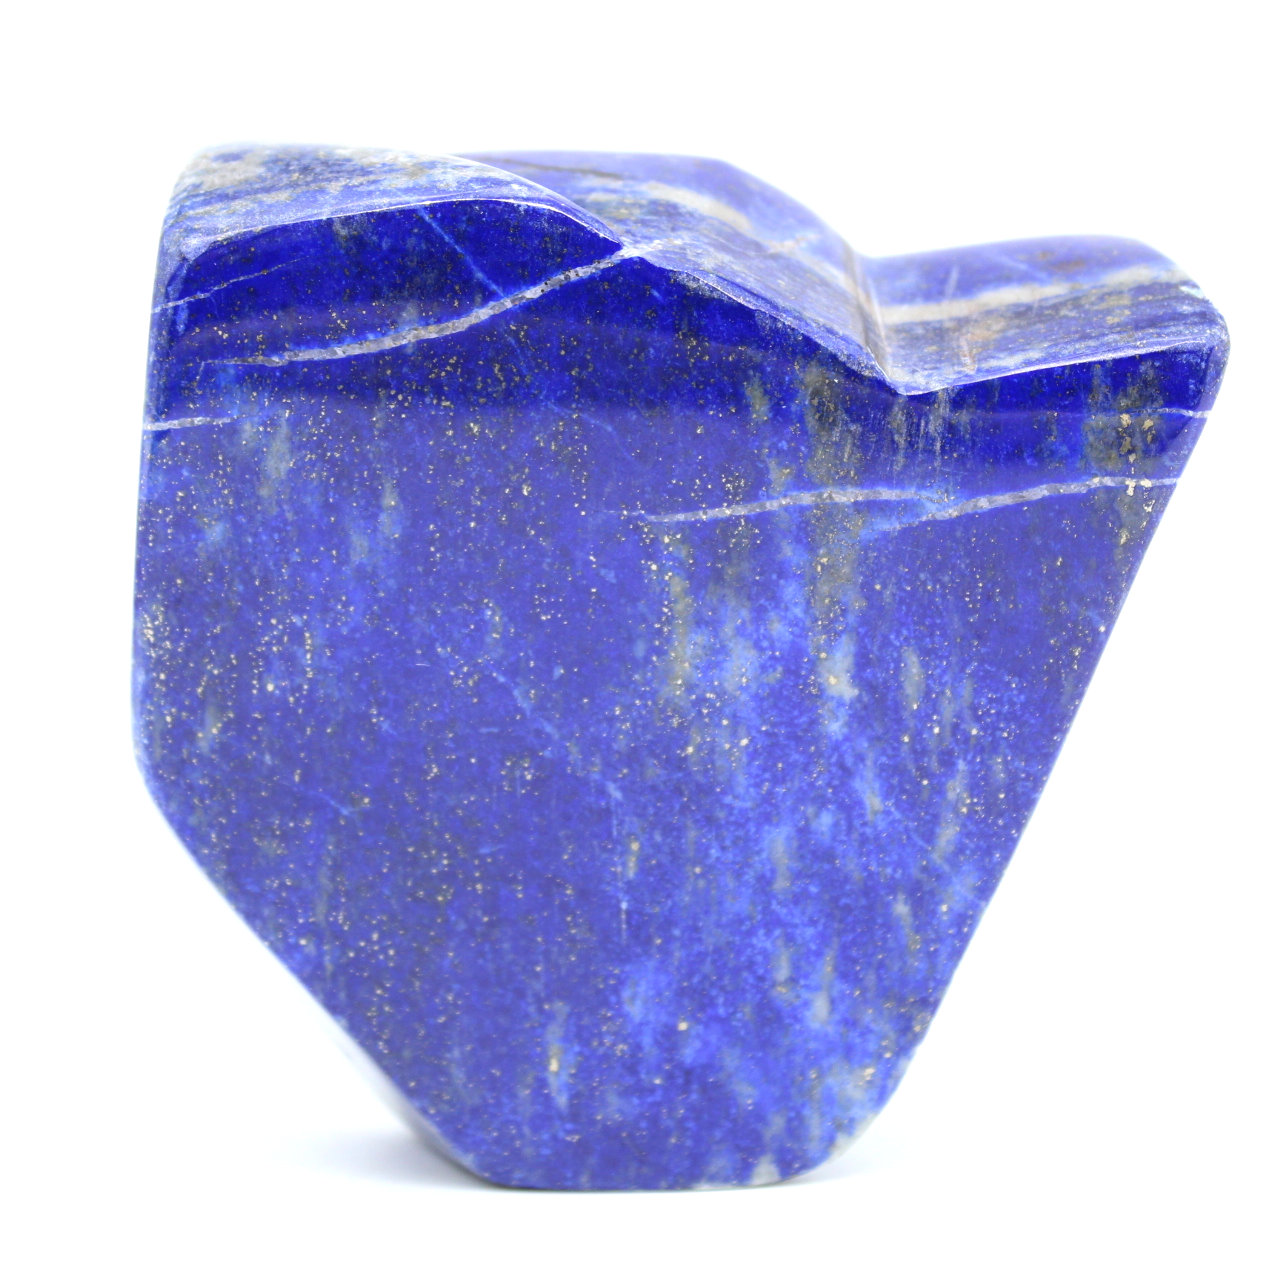 Lapis lazuli to lay